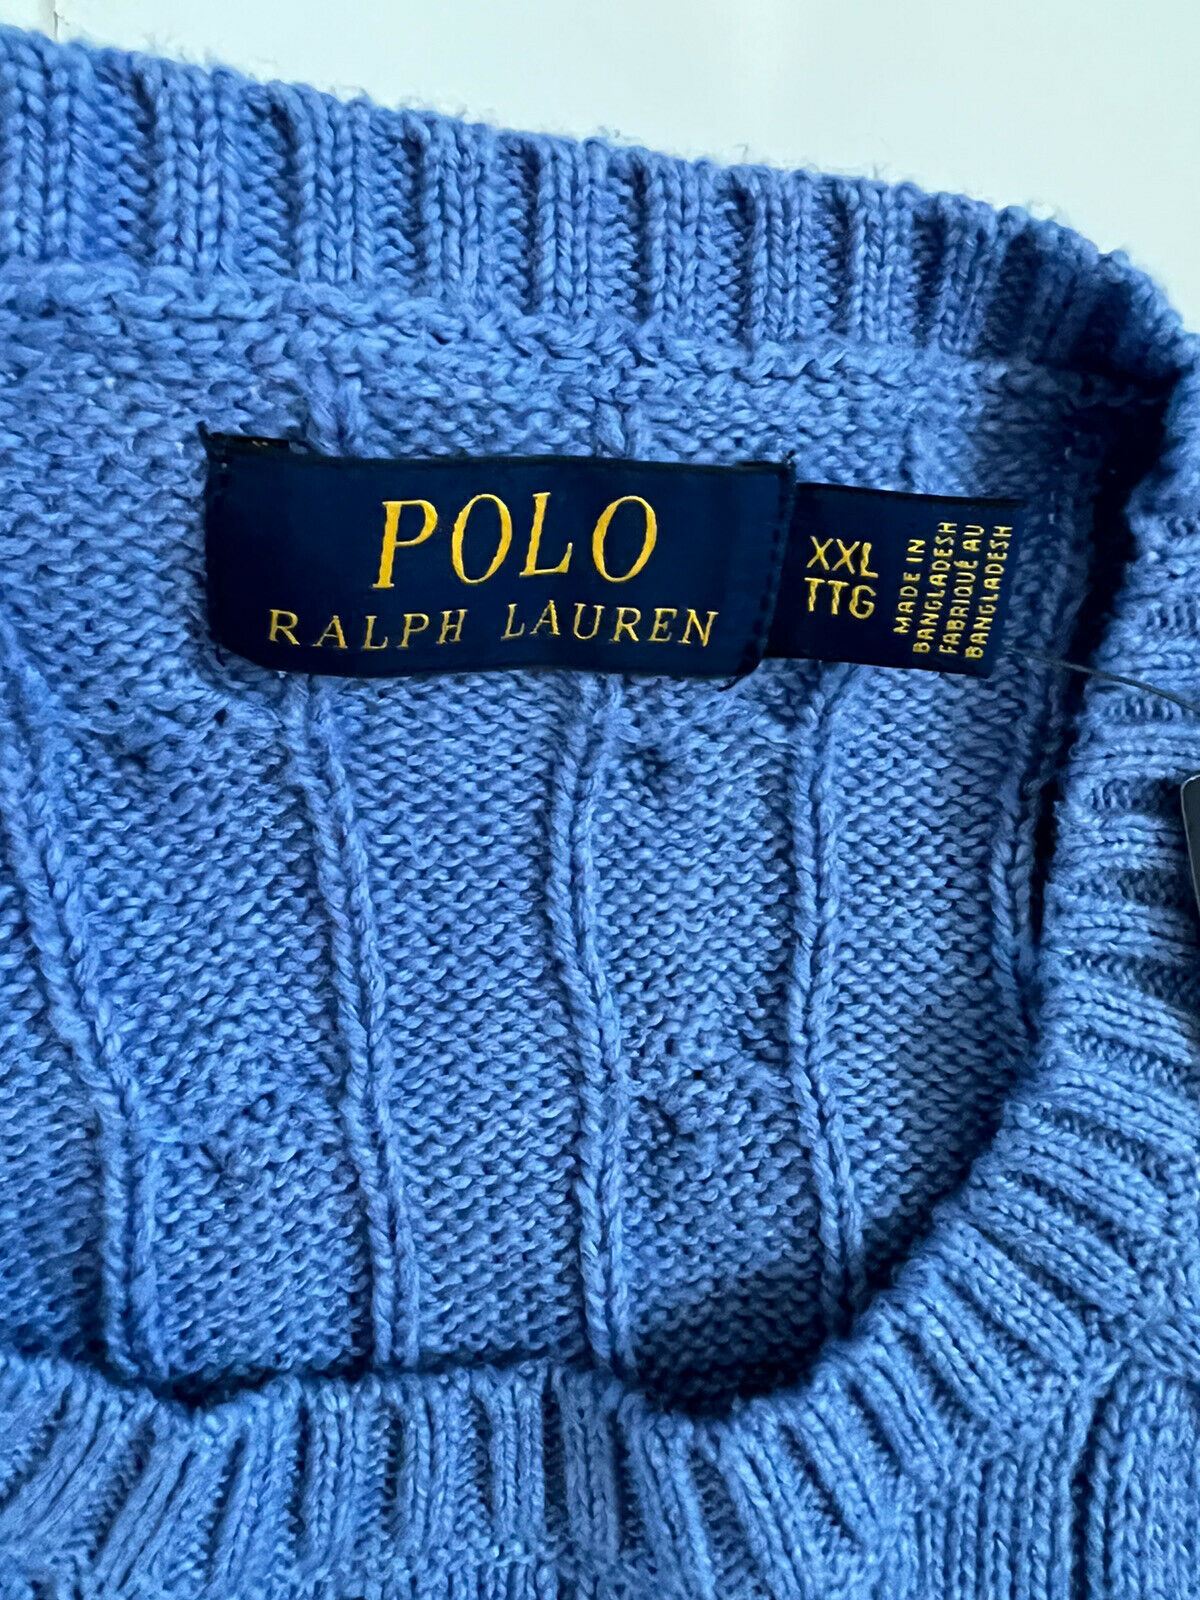 Neu mit Etikett: 110 $ Polo Ralph Lauren blauer Baumwollpullover für Herren 2XL